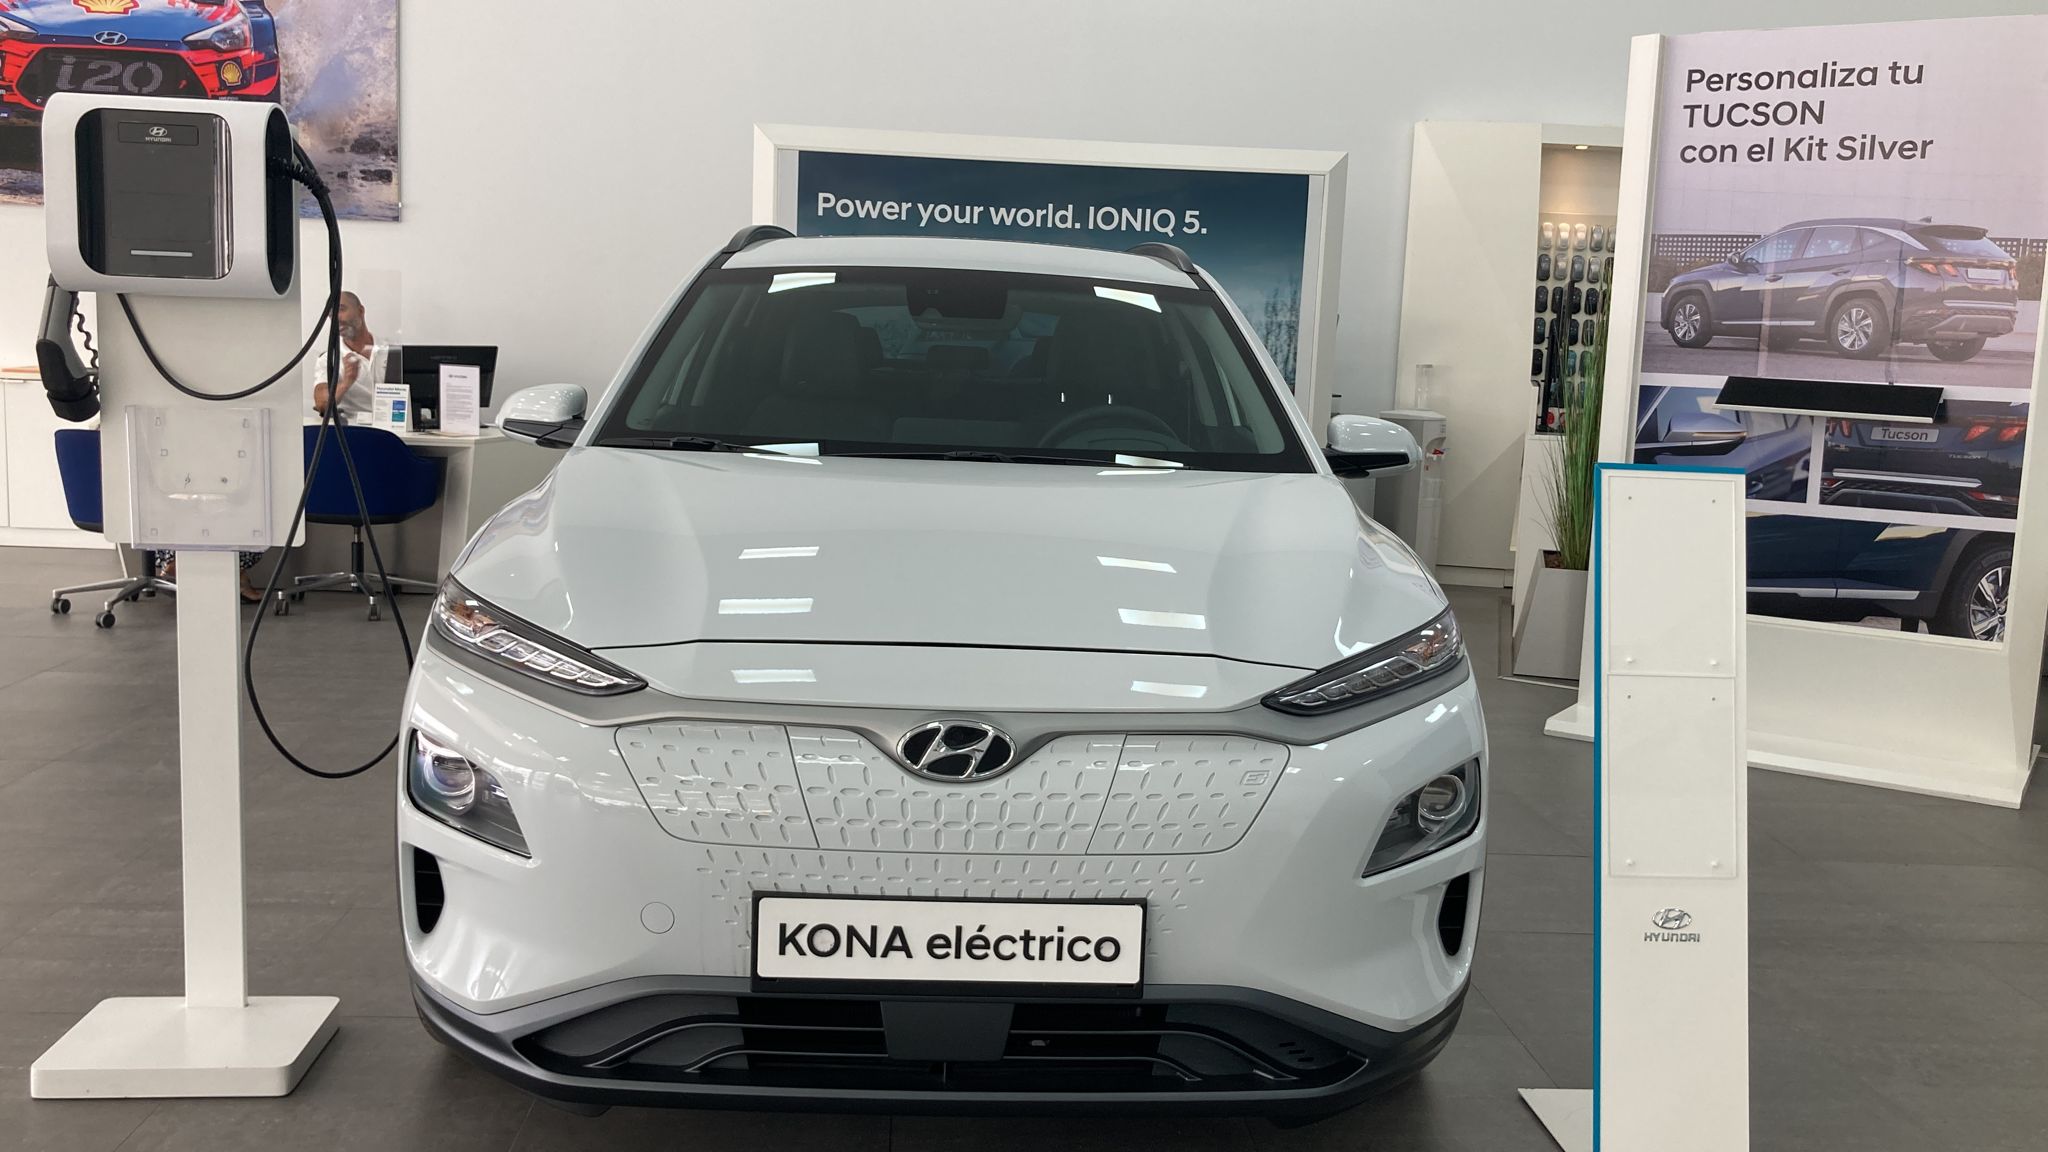 Imagen del Hyundai Kona eléctrico disponible en sus instalaciones